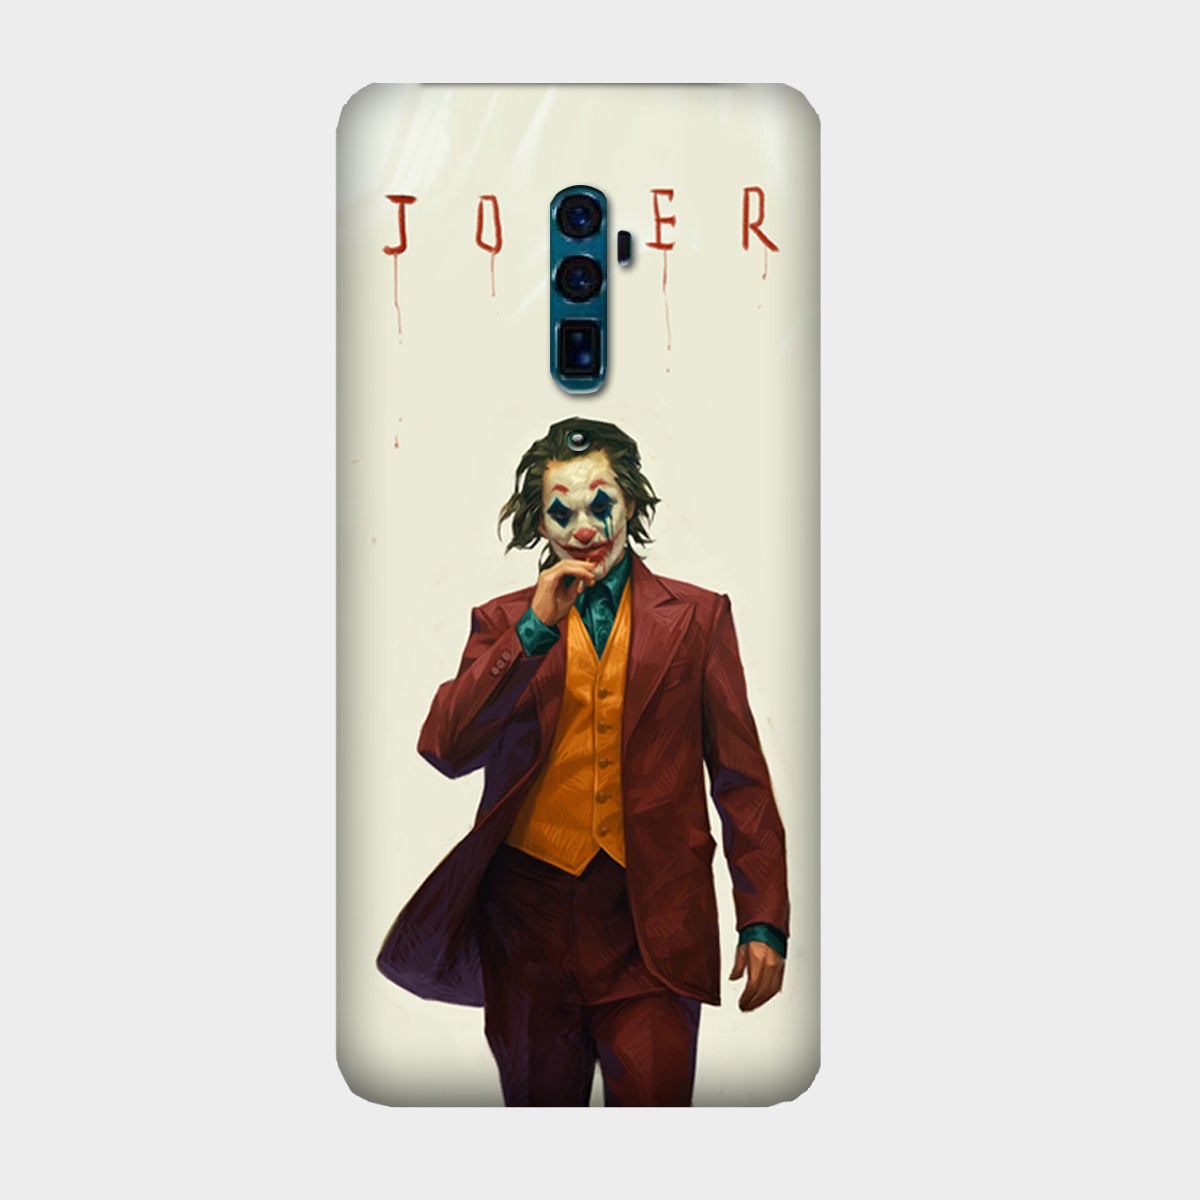 It's the Joker - Mobile Phone Cover - Hard Case